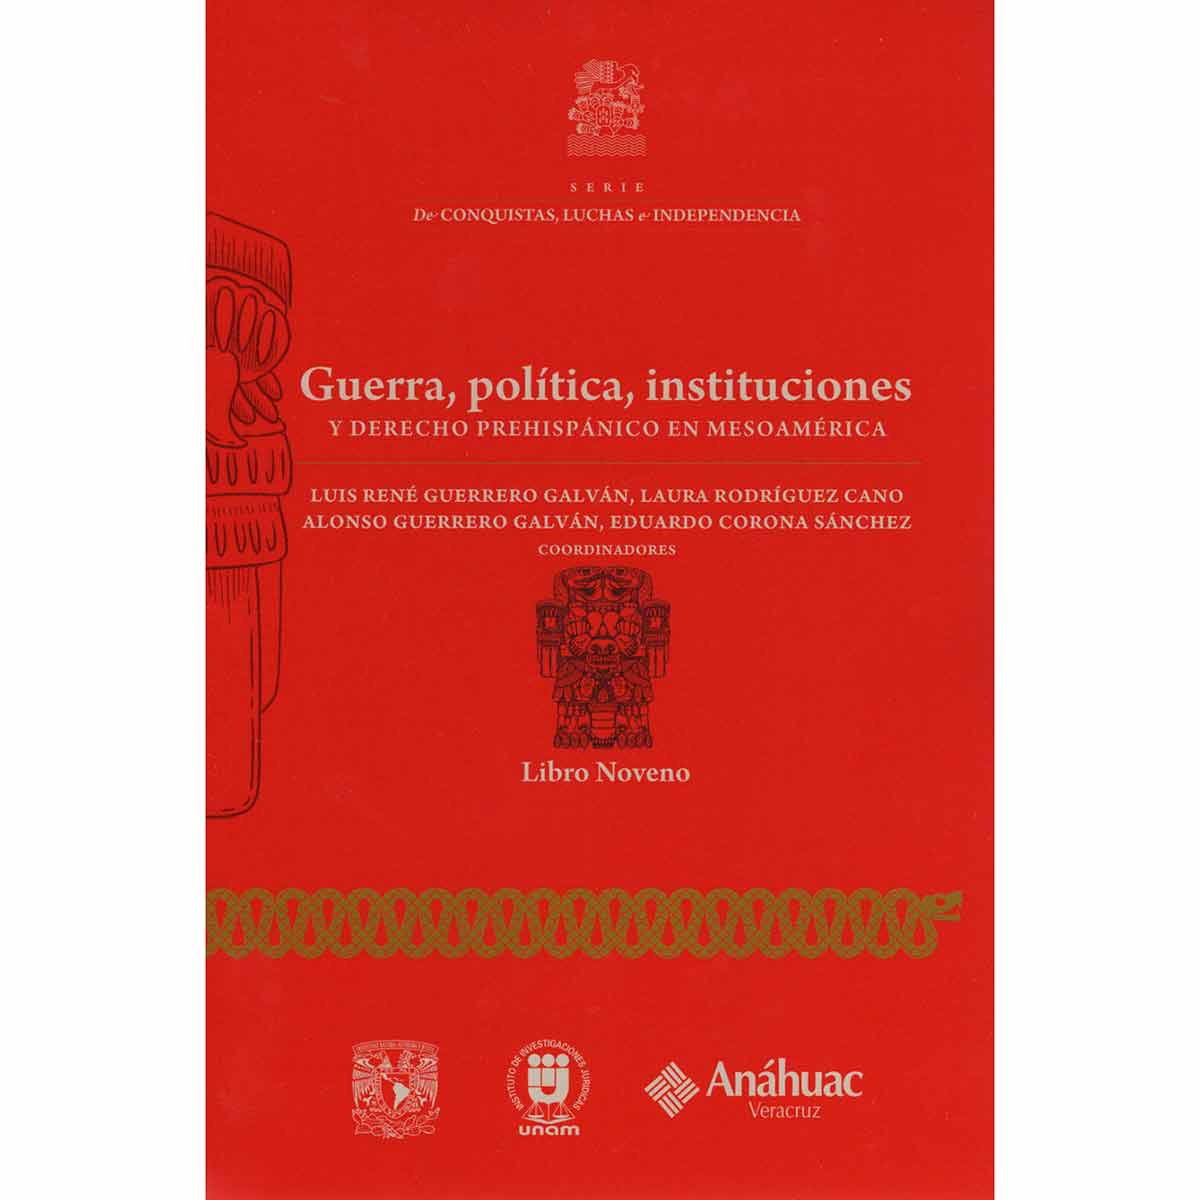 GUERRA, POLÍTICA, INSTITUCIONES Y DERECHO PREHISPÁNICO EN MESOAMÉRICA